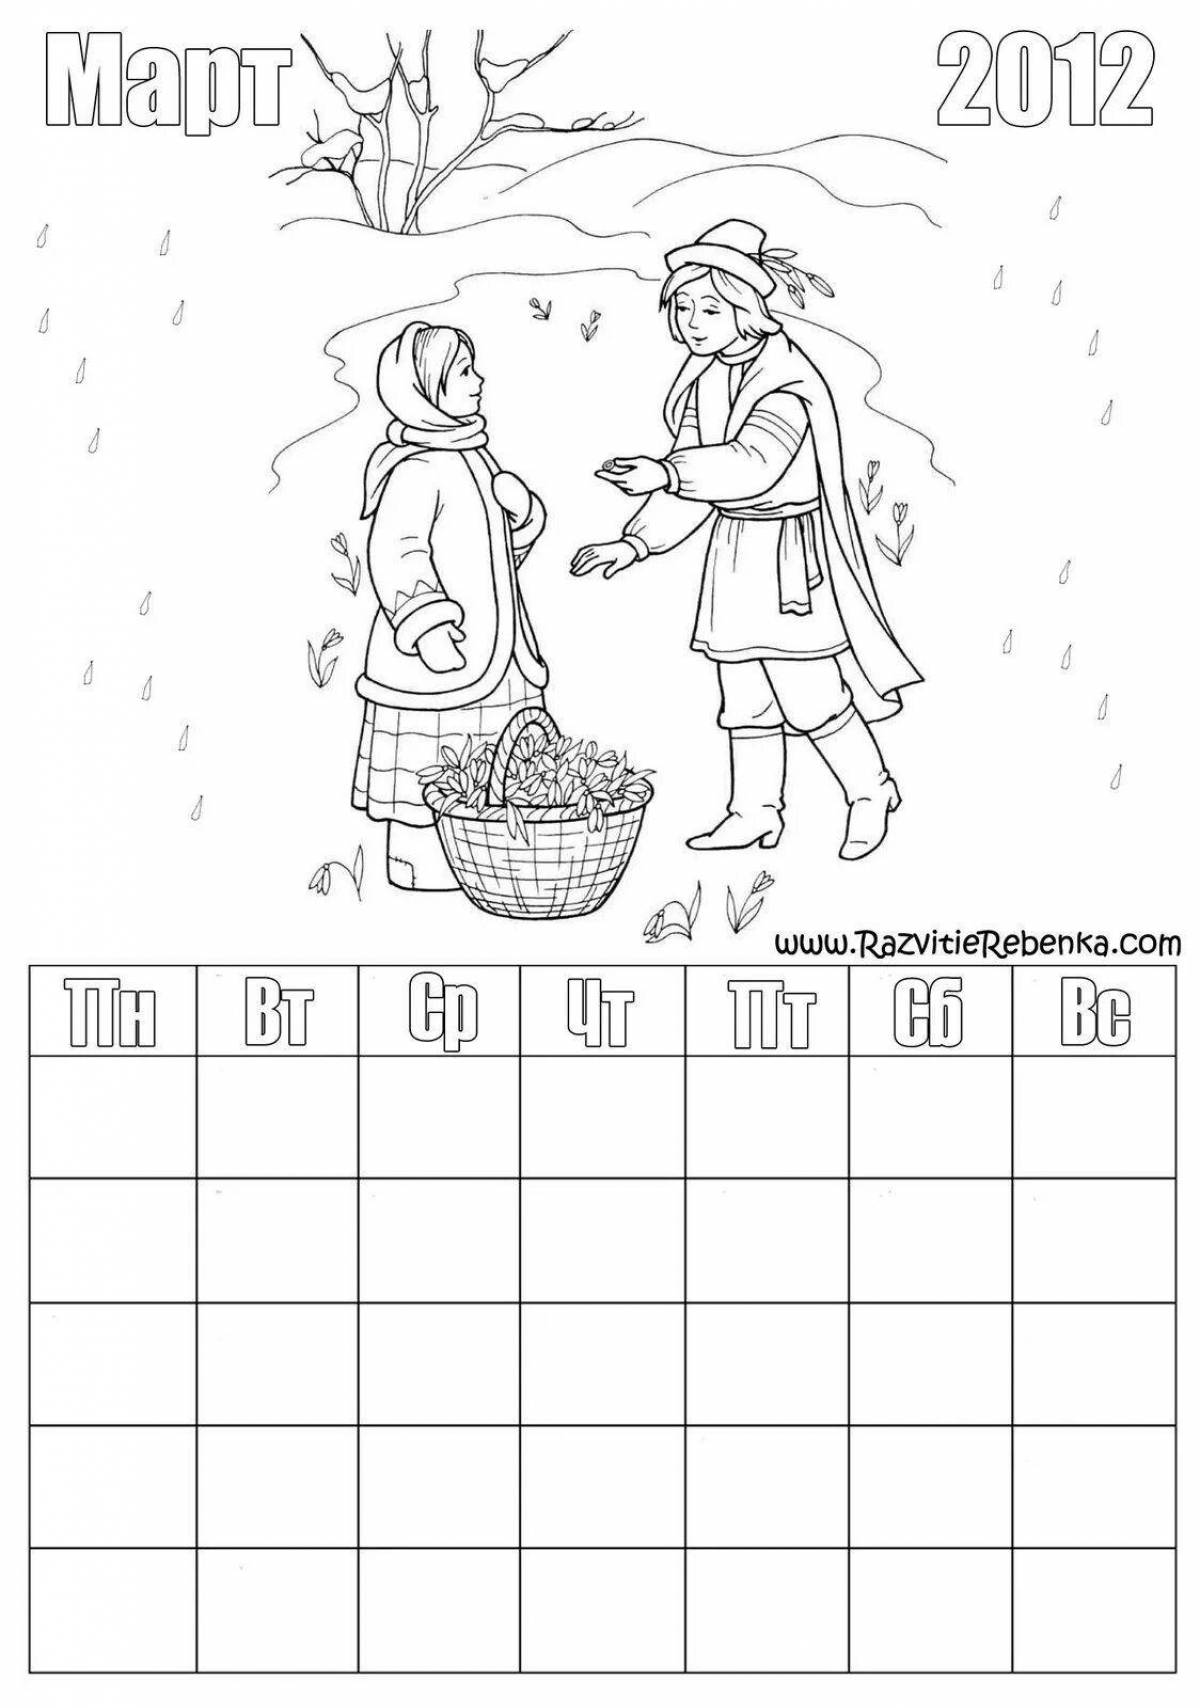 Дни недели раскраска. Календарь раскраска. Календарь раскраска для детей. Календарик раскраска. Раскраска для малышей календарь.